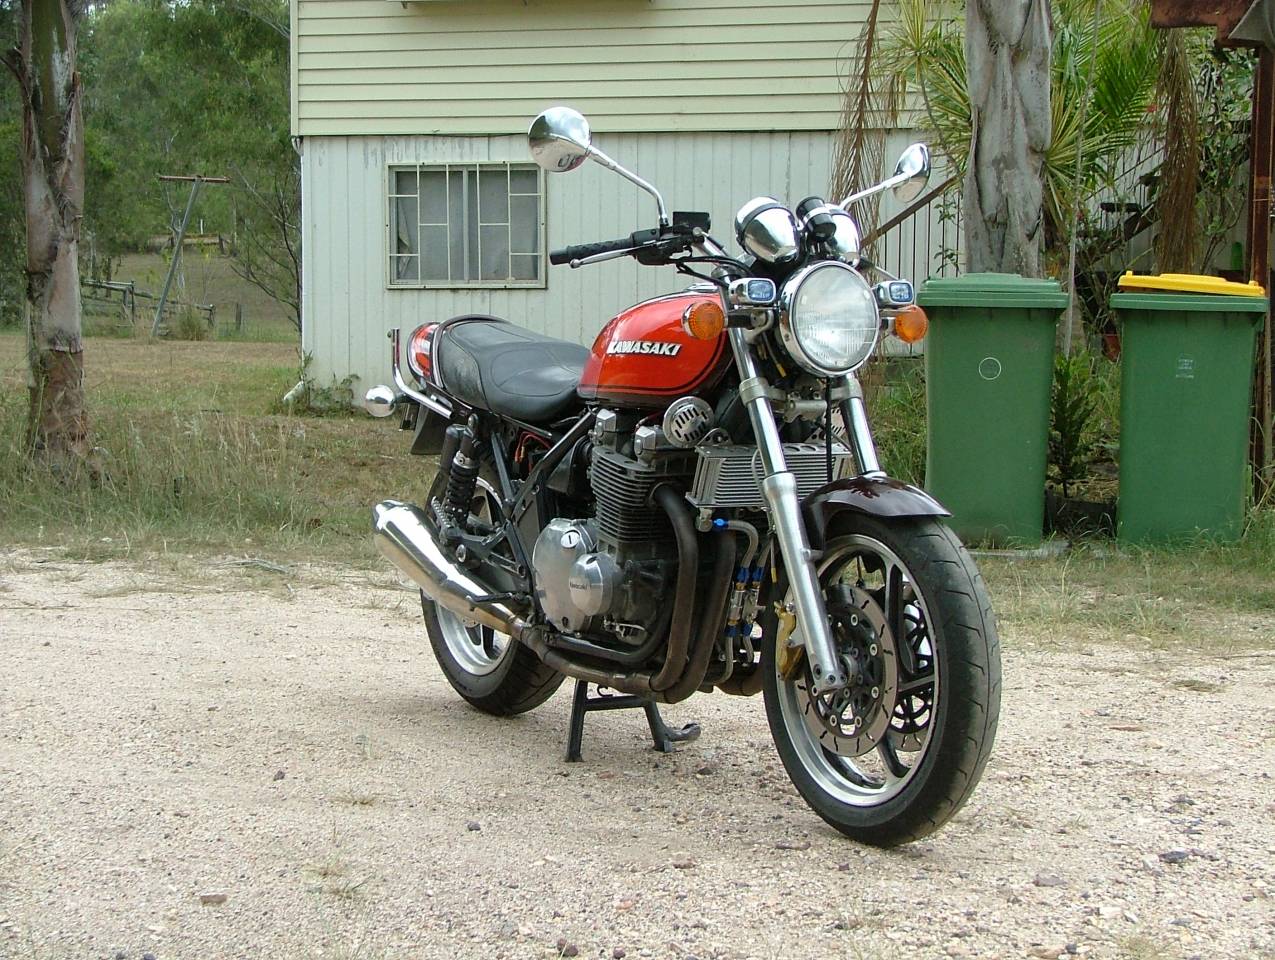 Kawasaki Zephyr 1100 (ZR 1100)